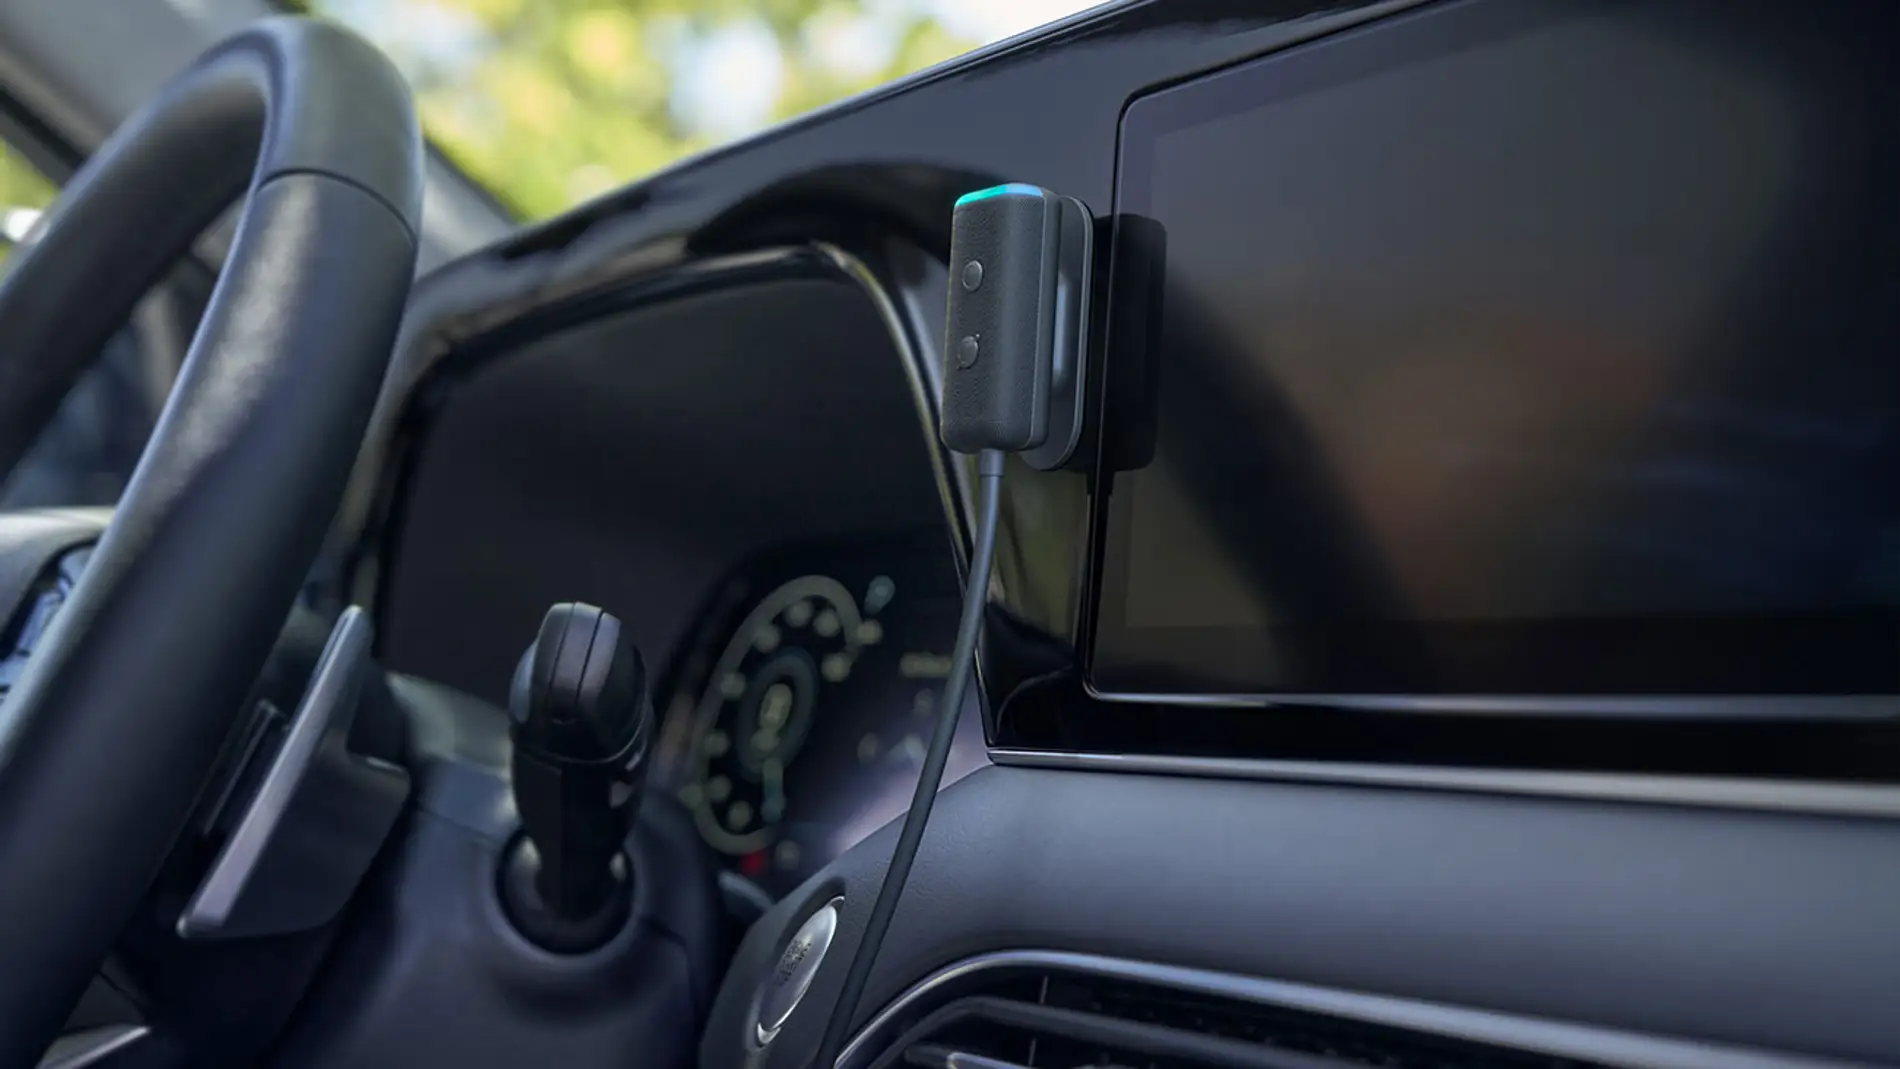 Echo Auto en España: Alexa en tu coche con estos 8 micros -  Meristation